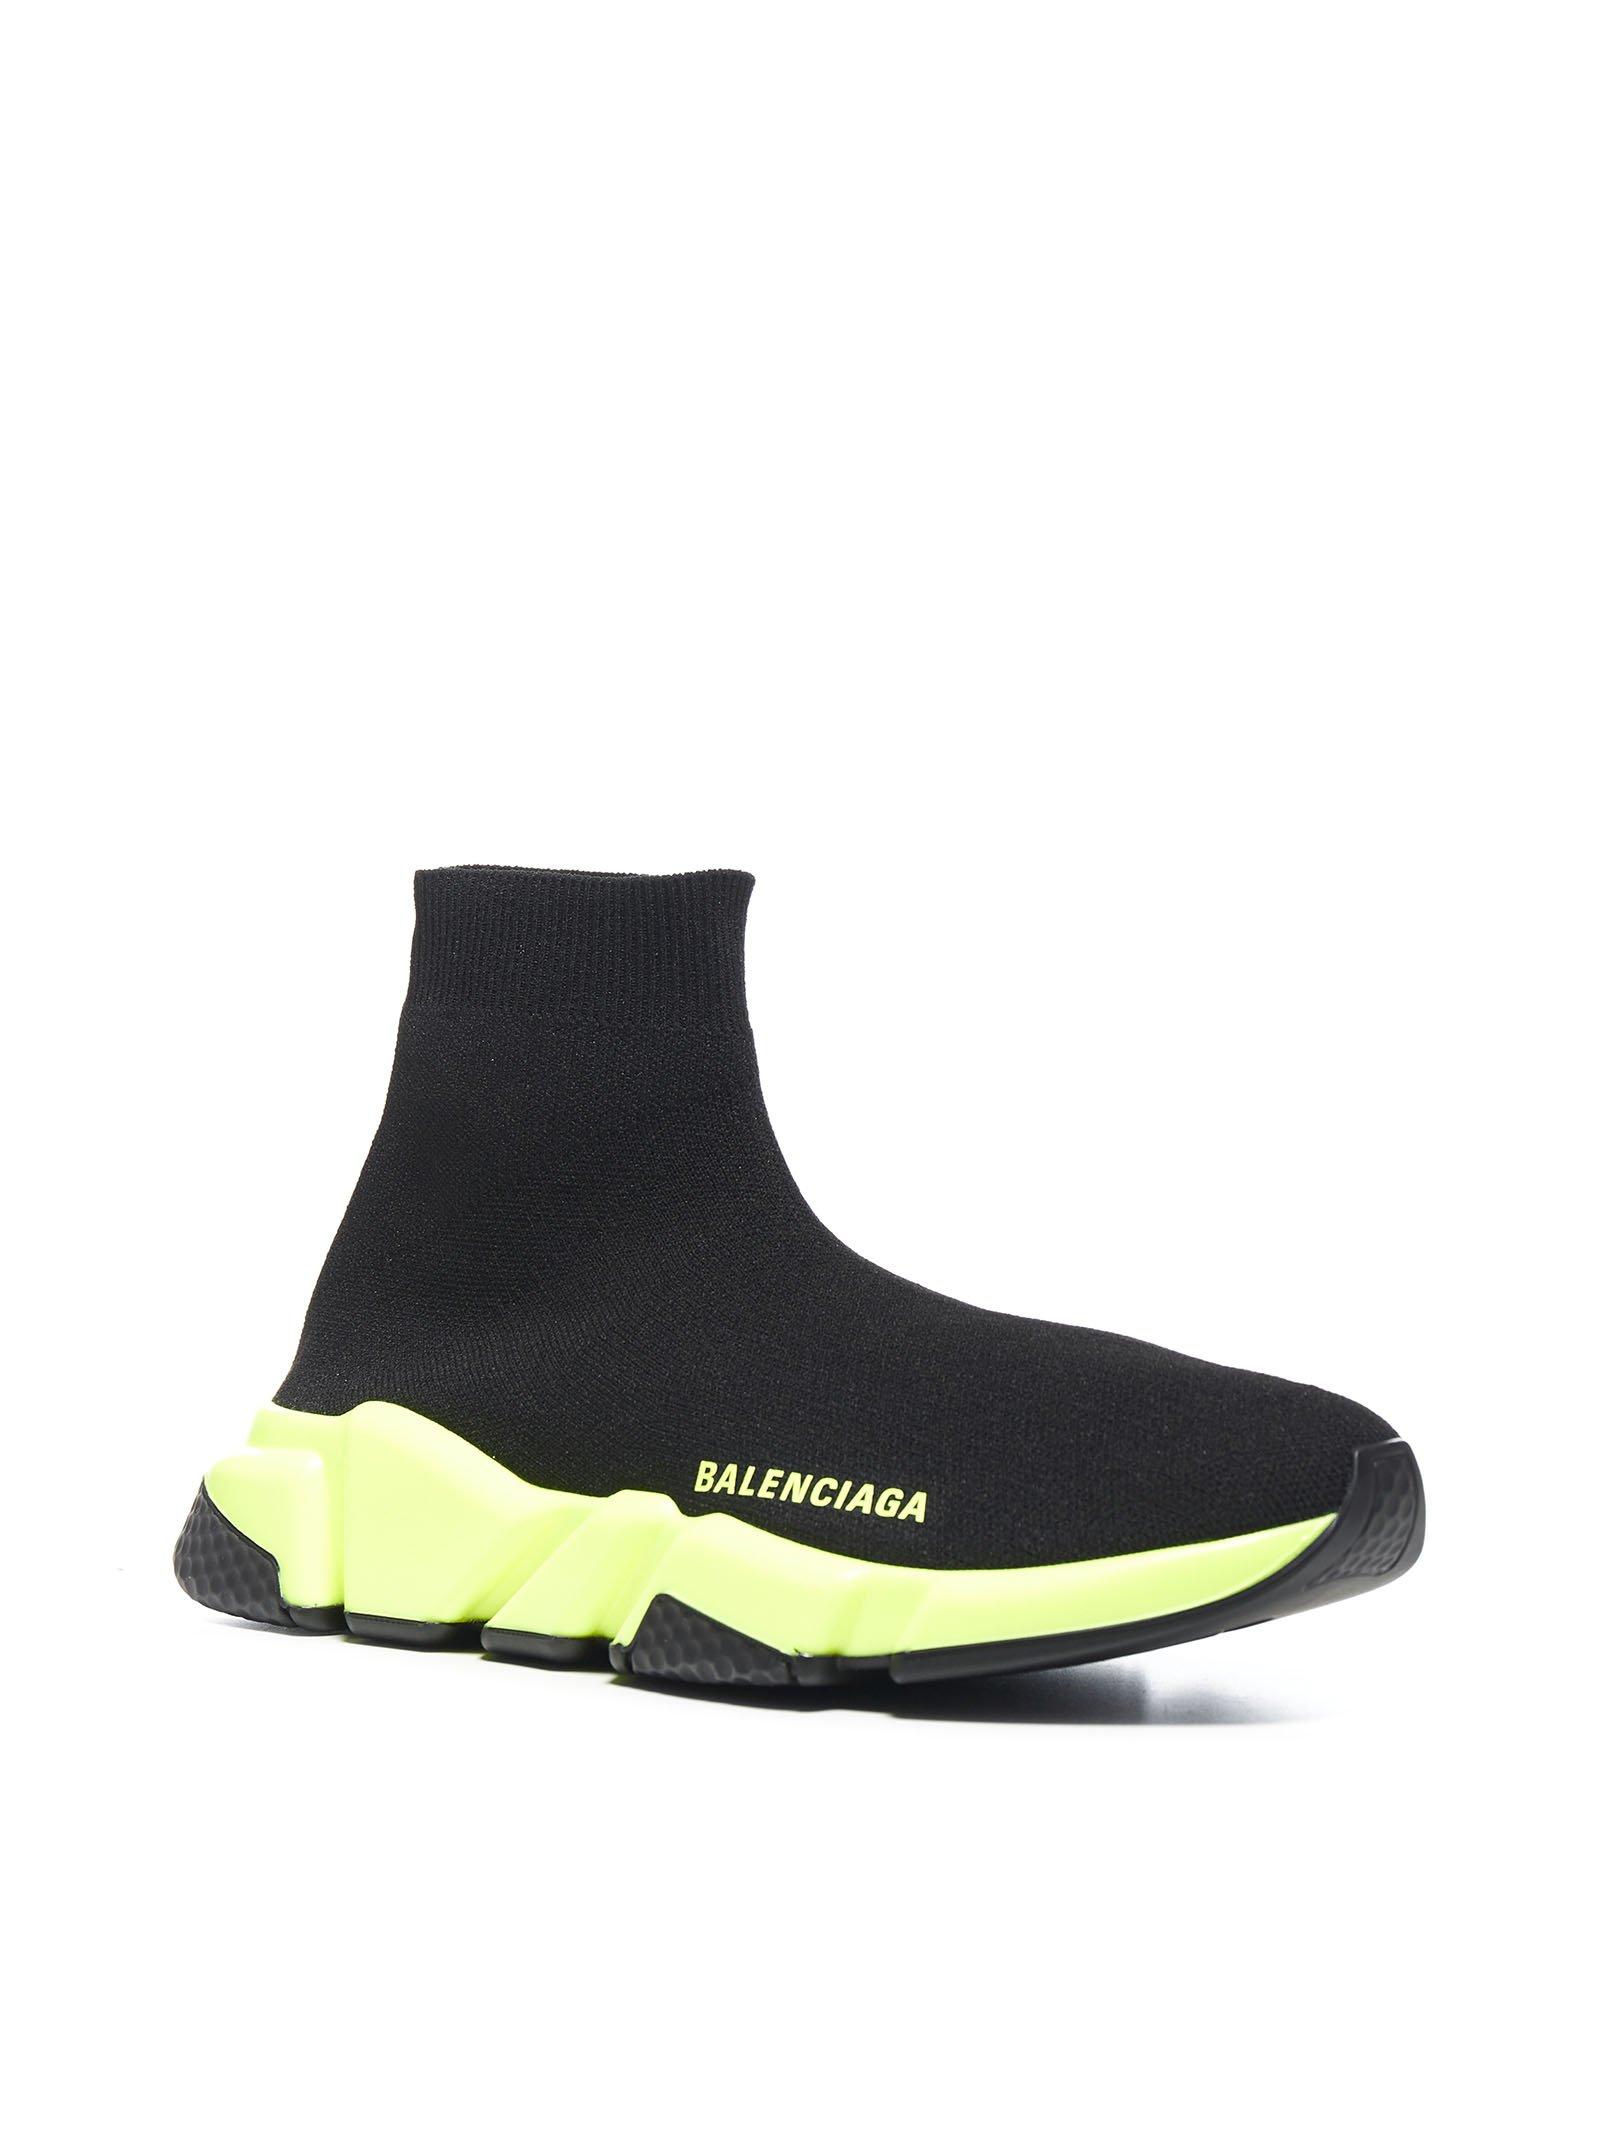 Balenciaga Speed Light Knit Sock Sneakers in Black - Lyst